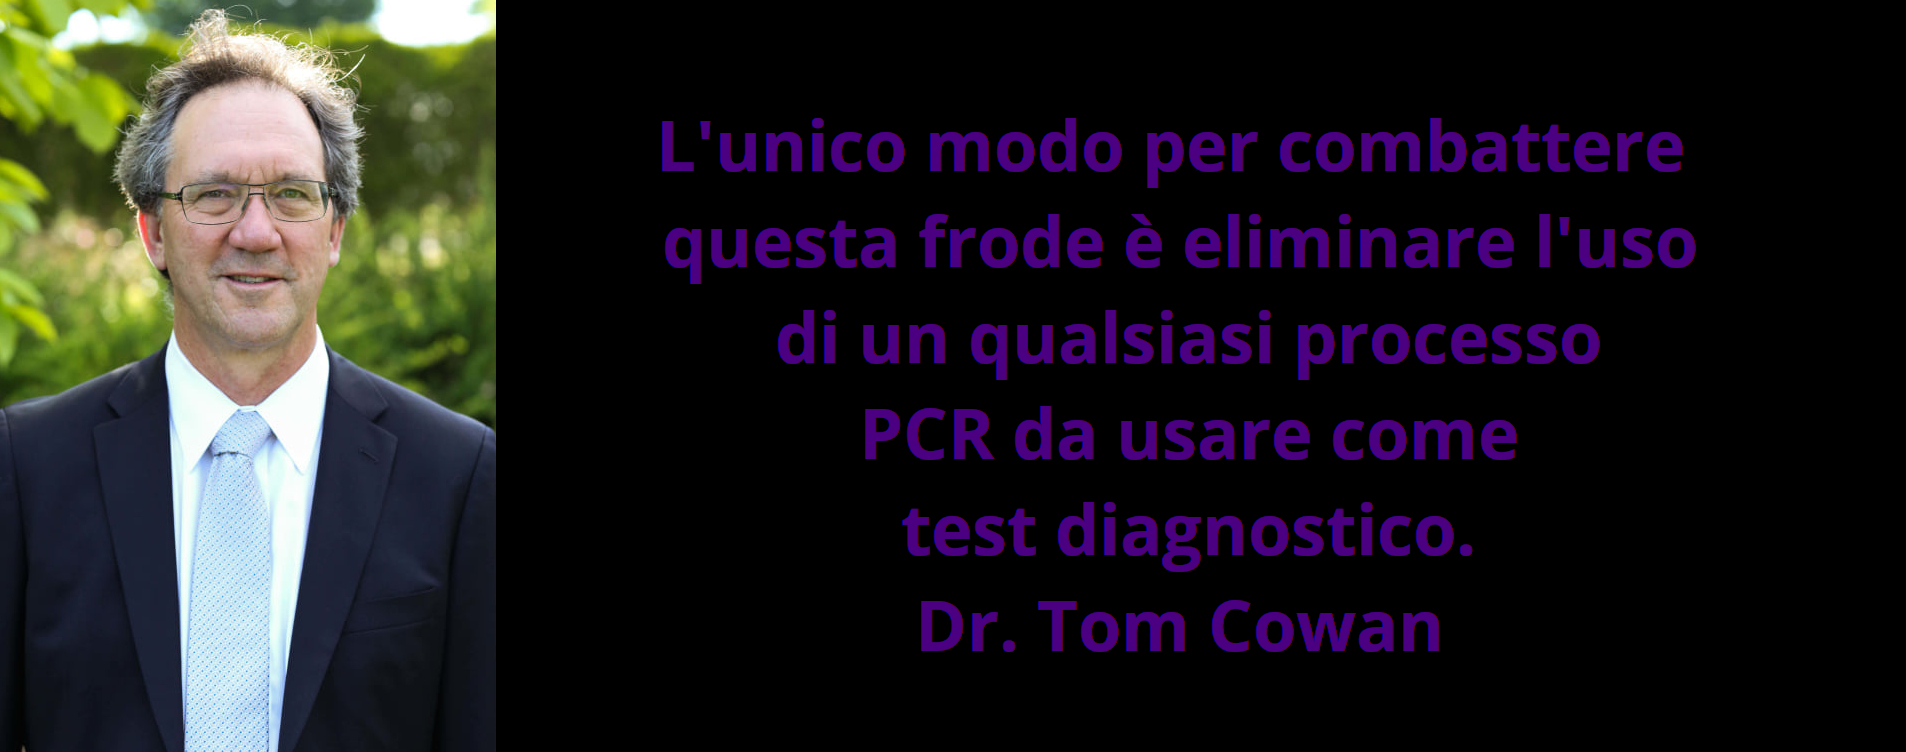 La frode dei test PCR – Dr. Tom Cowan